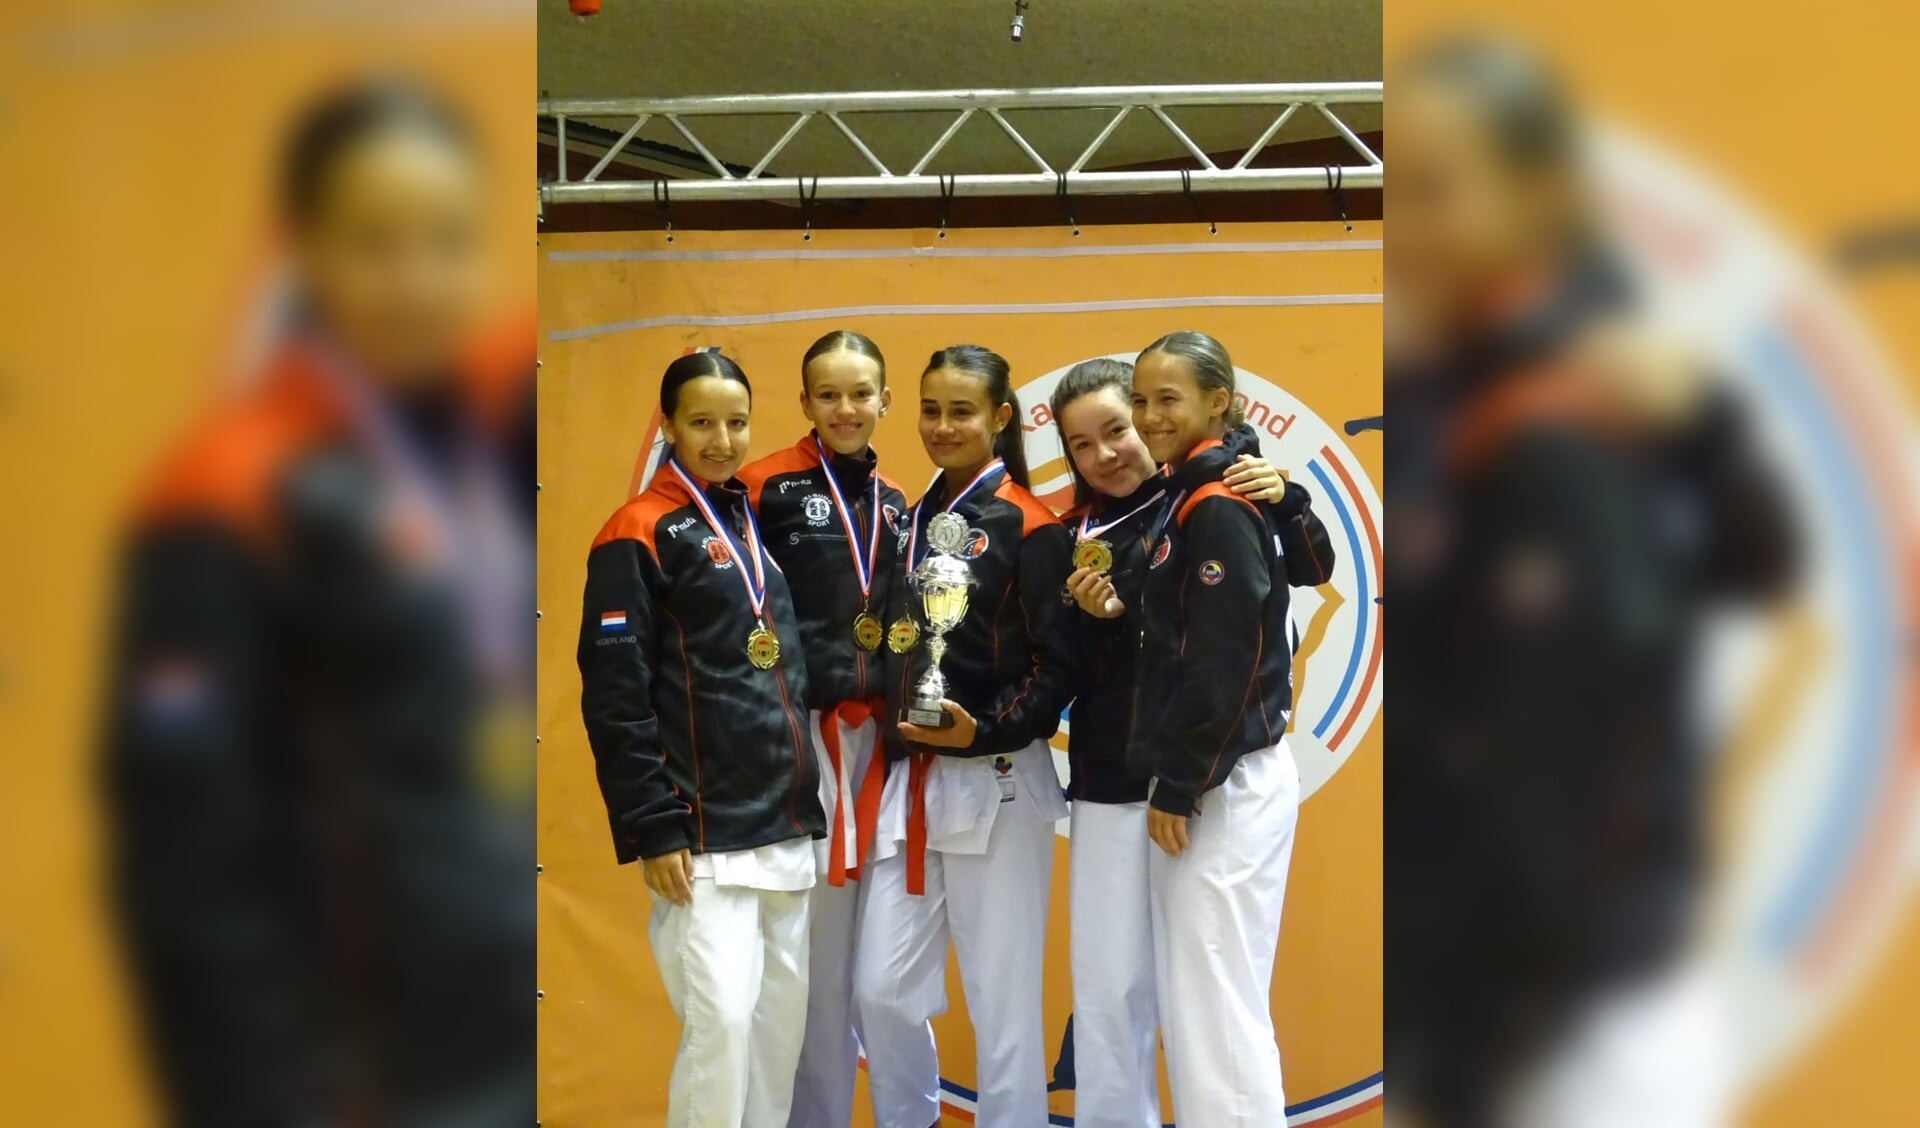 Het juniorenteam meisjes greep goud tijdens Dutch Open tot 21 jaar in Almere.